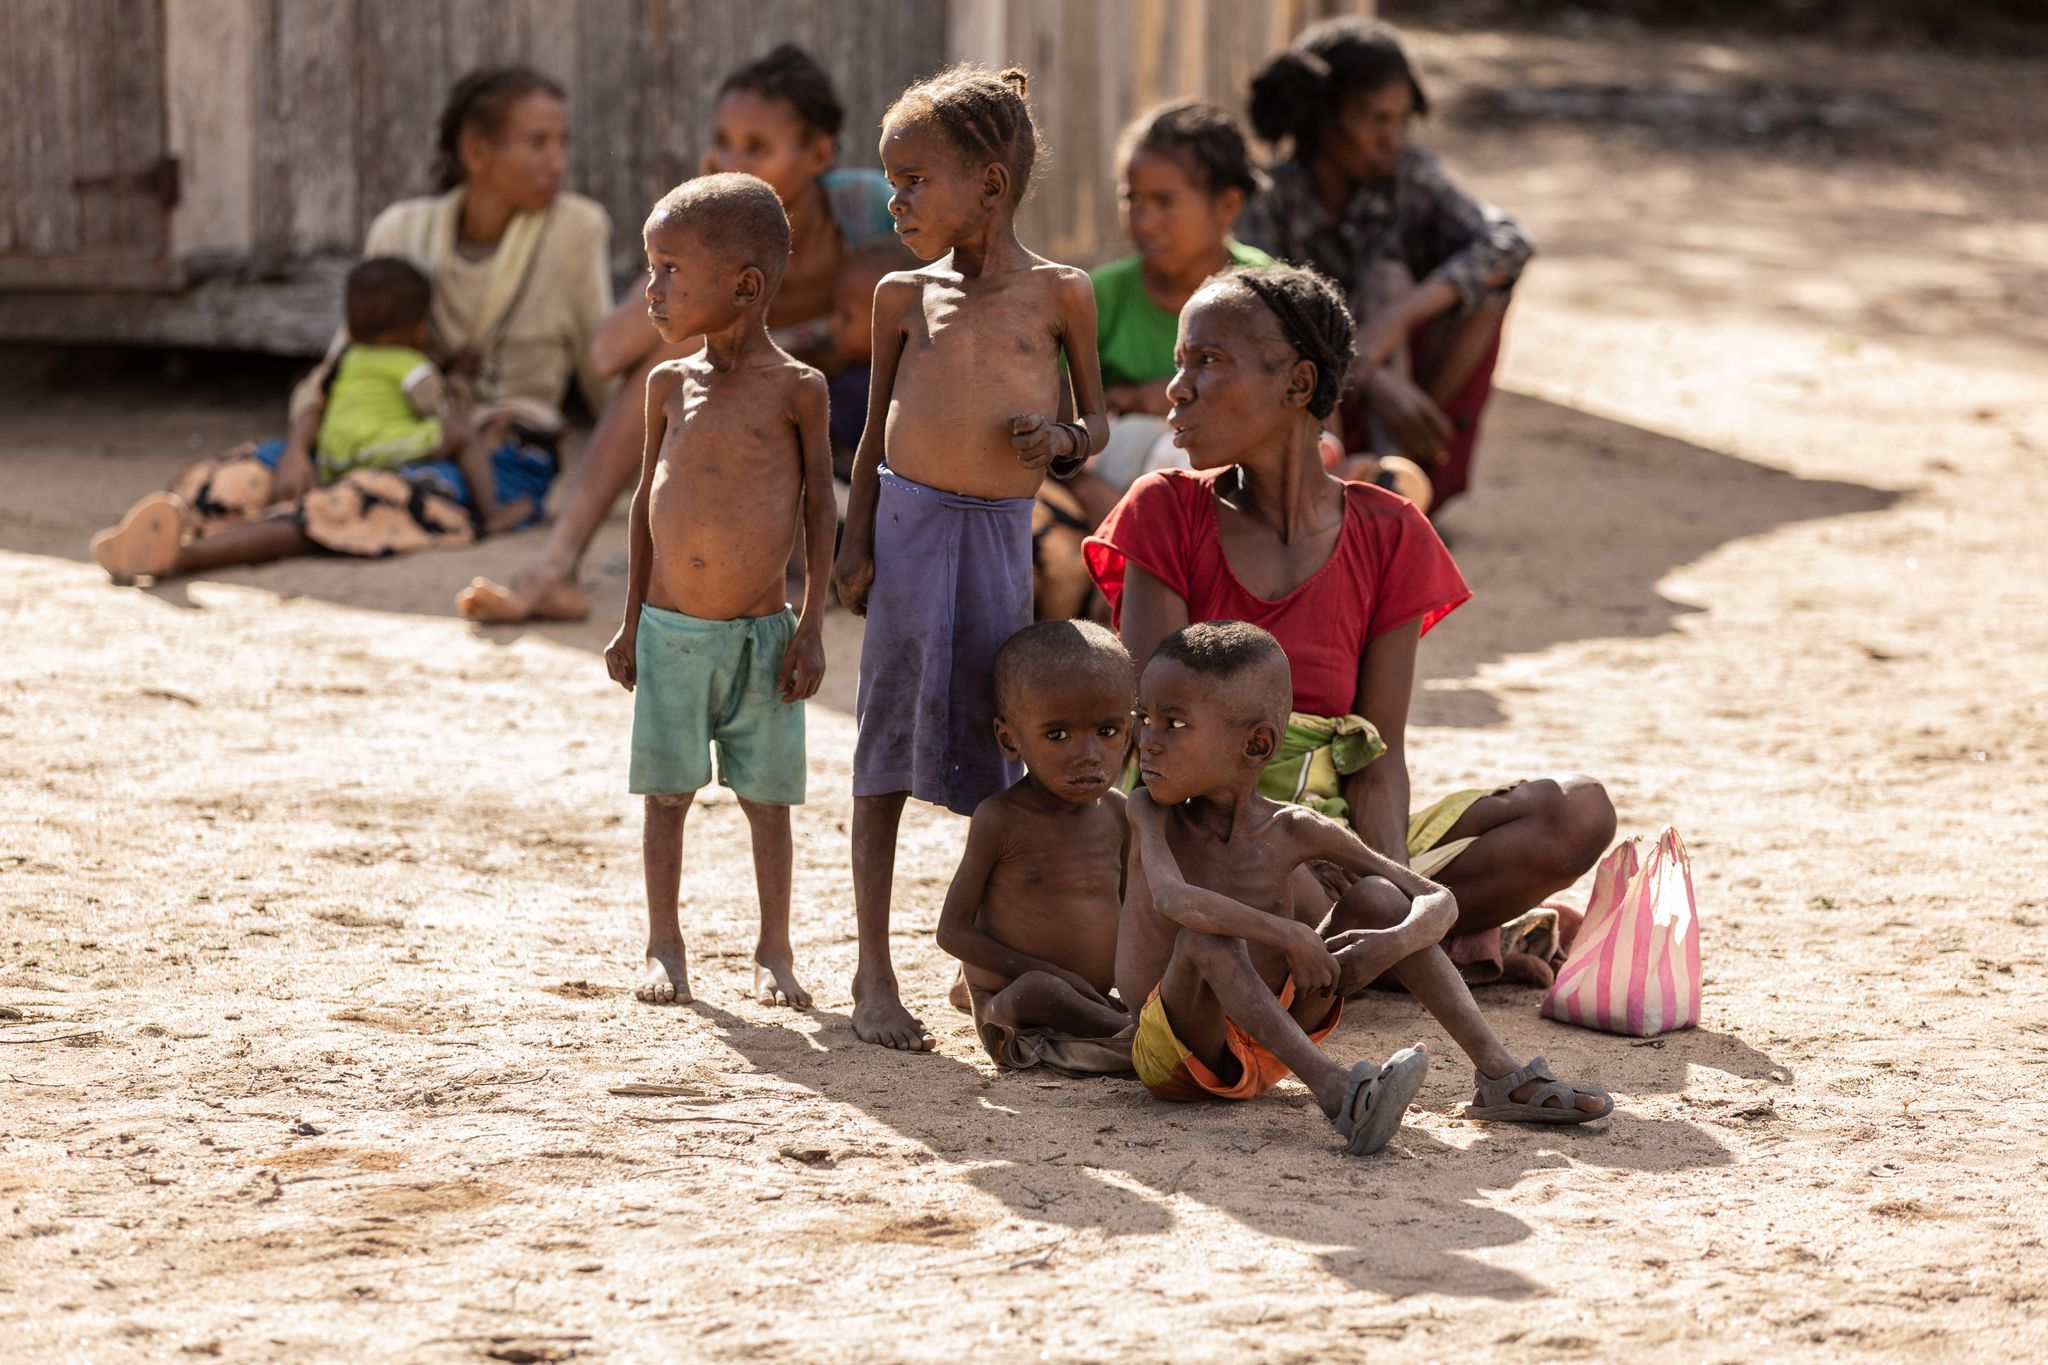 HANDOUT - Marisoa y sus hijos padecen de desnutrición por la escasez de alimentos en el sur de Madagascar, en la peor sequía de los últimos 30 años. Foto: Tsiory Andriantsoarana/WFP/dpa - ATENCIÓN: Sólo para uso editorial en relación con la cobertura sobre (la emisión/la película/la subasta/la exposición/el libro) y mencionando el crédito completo